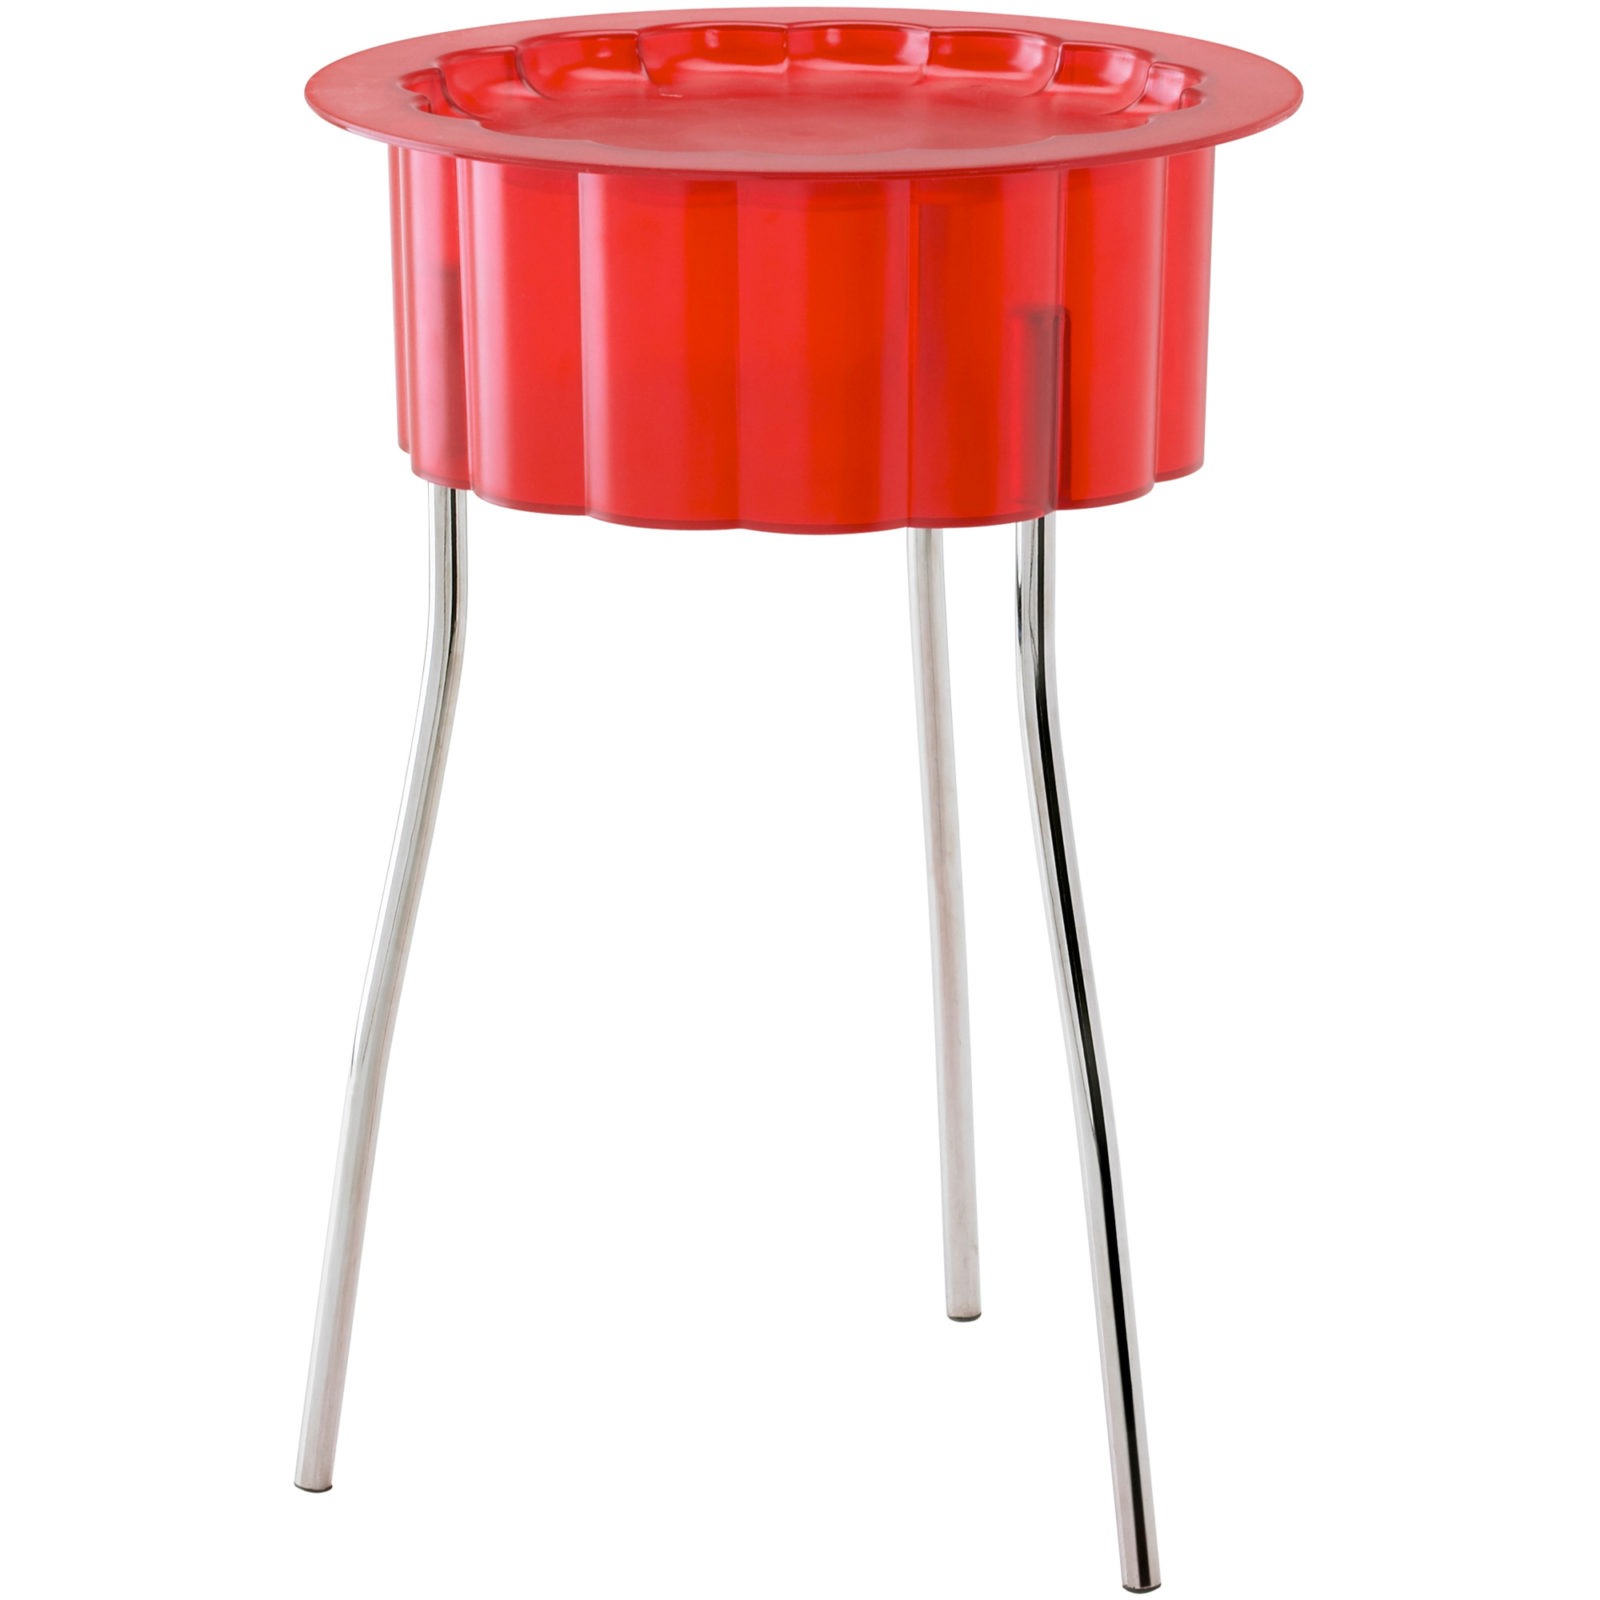 Ett litet rött sidobord, HATTEN, som ser ut som en uppochnervänd hatt på metallben.